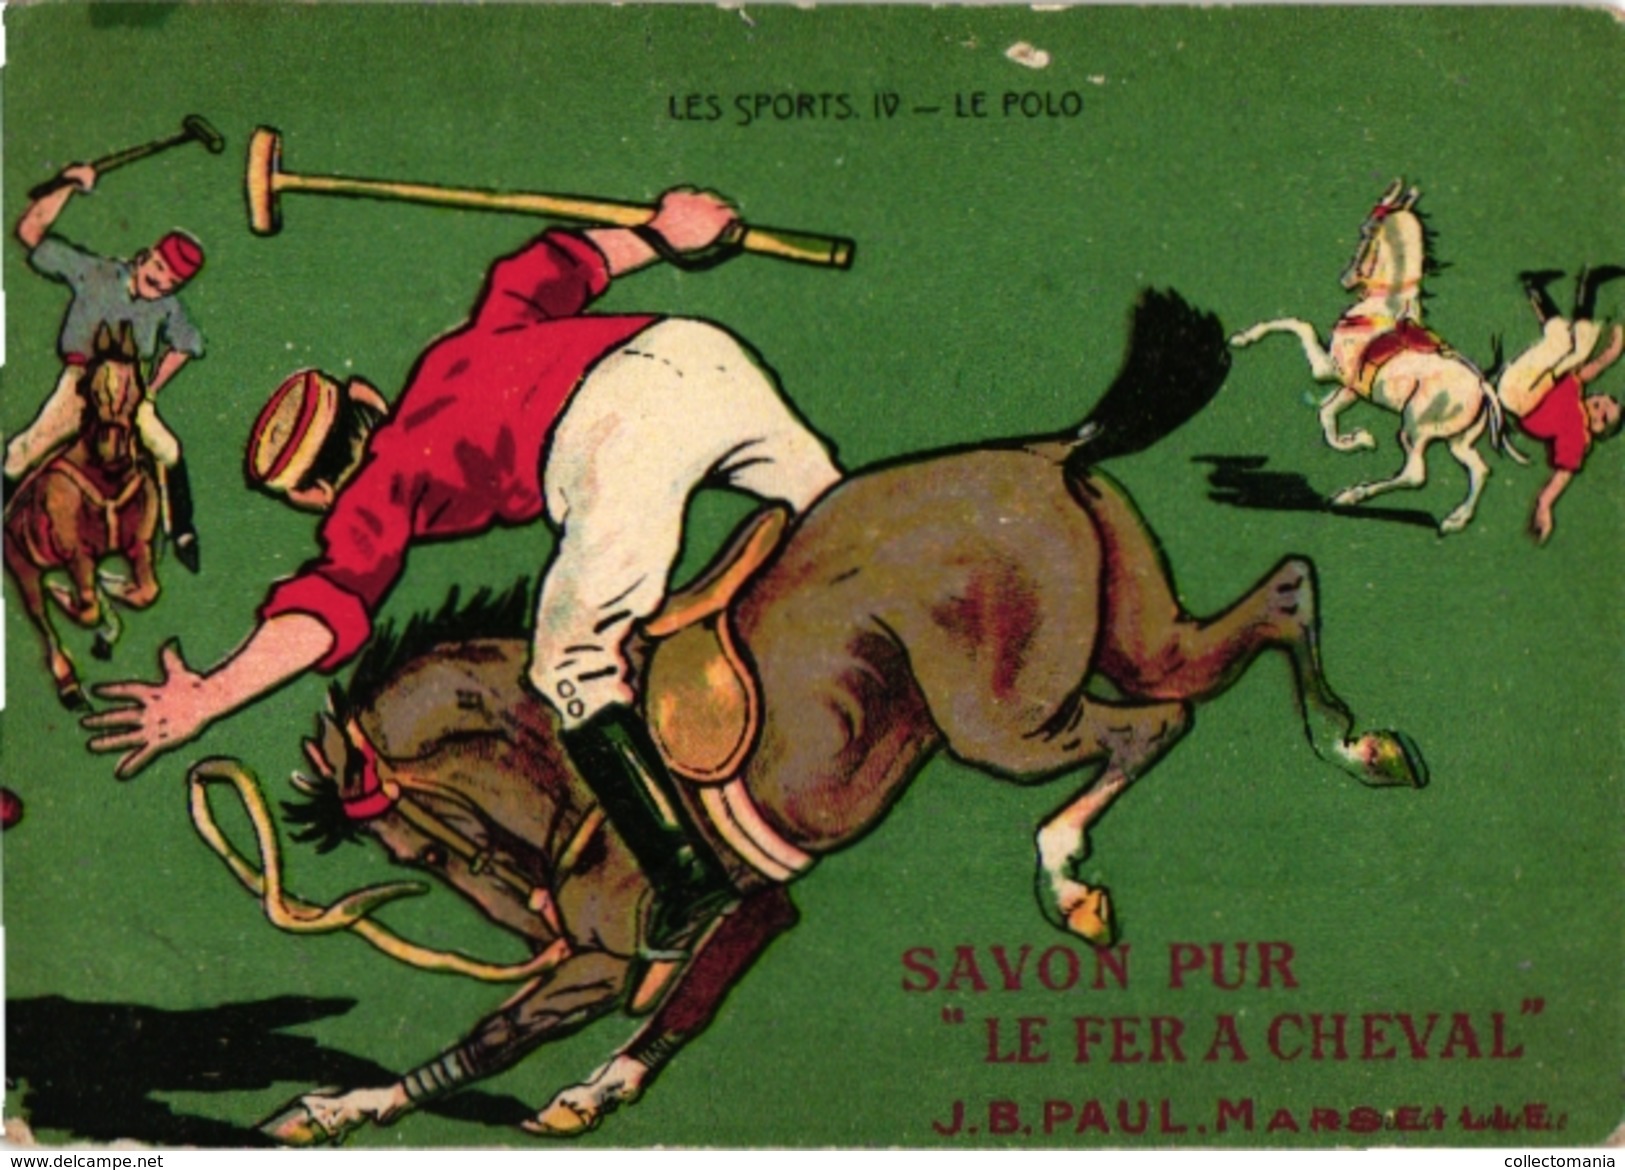 3 Trade Cards Chromo  POLO On Horse Badminton  Pub  Choc Meurisse Savon Le Fer à Cheval La Kabiline 2 Match Box Label - Paracaidismo